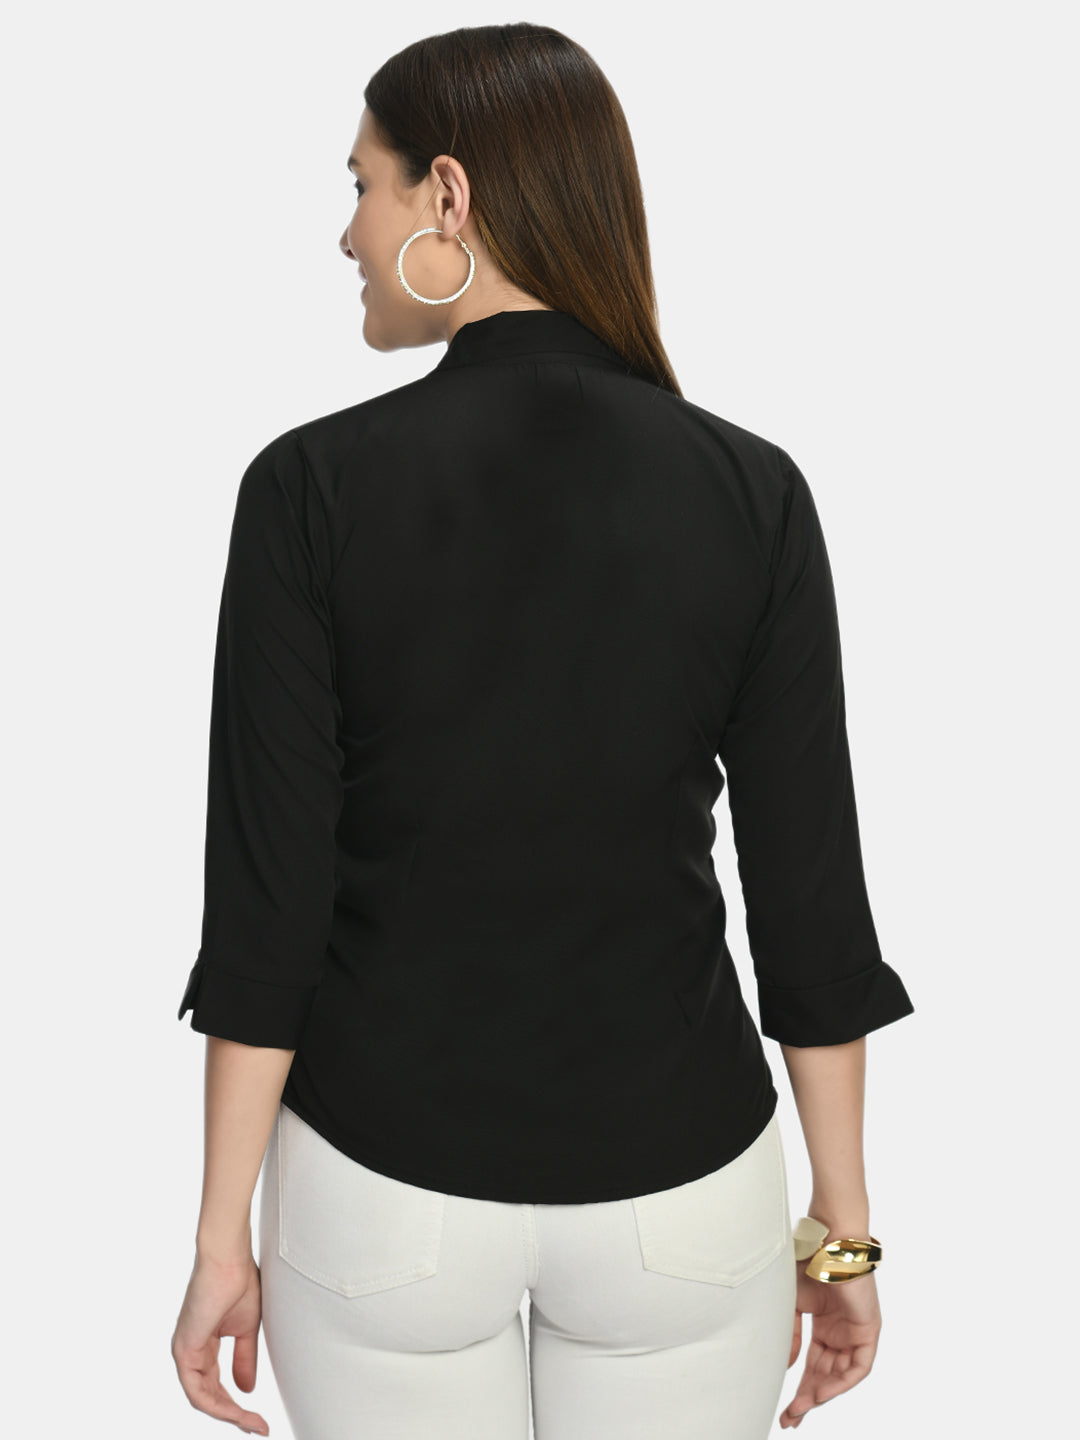 Wahe-NOOR Women's Black Formal Shirt - Distacart